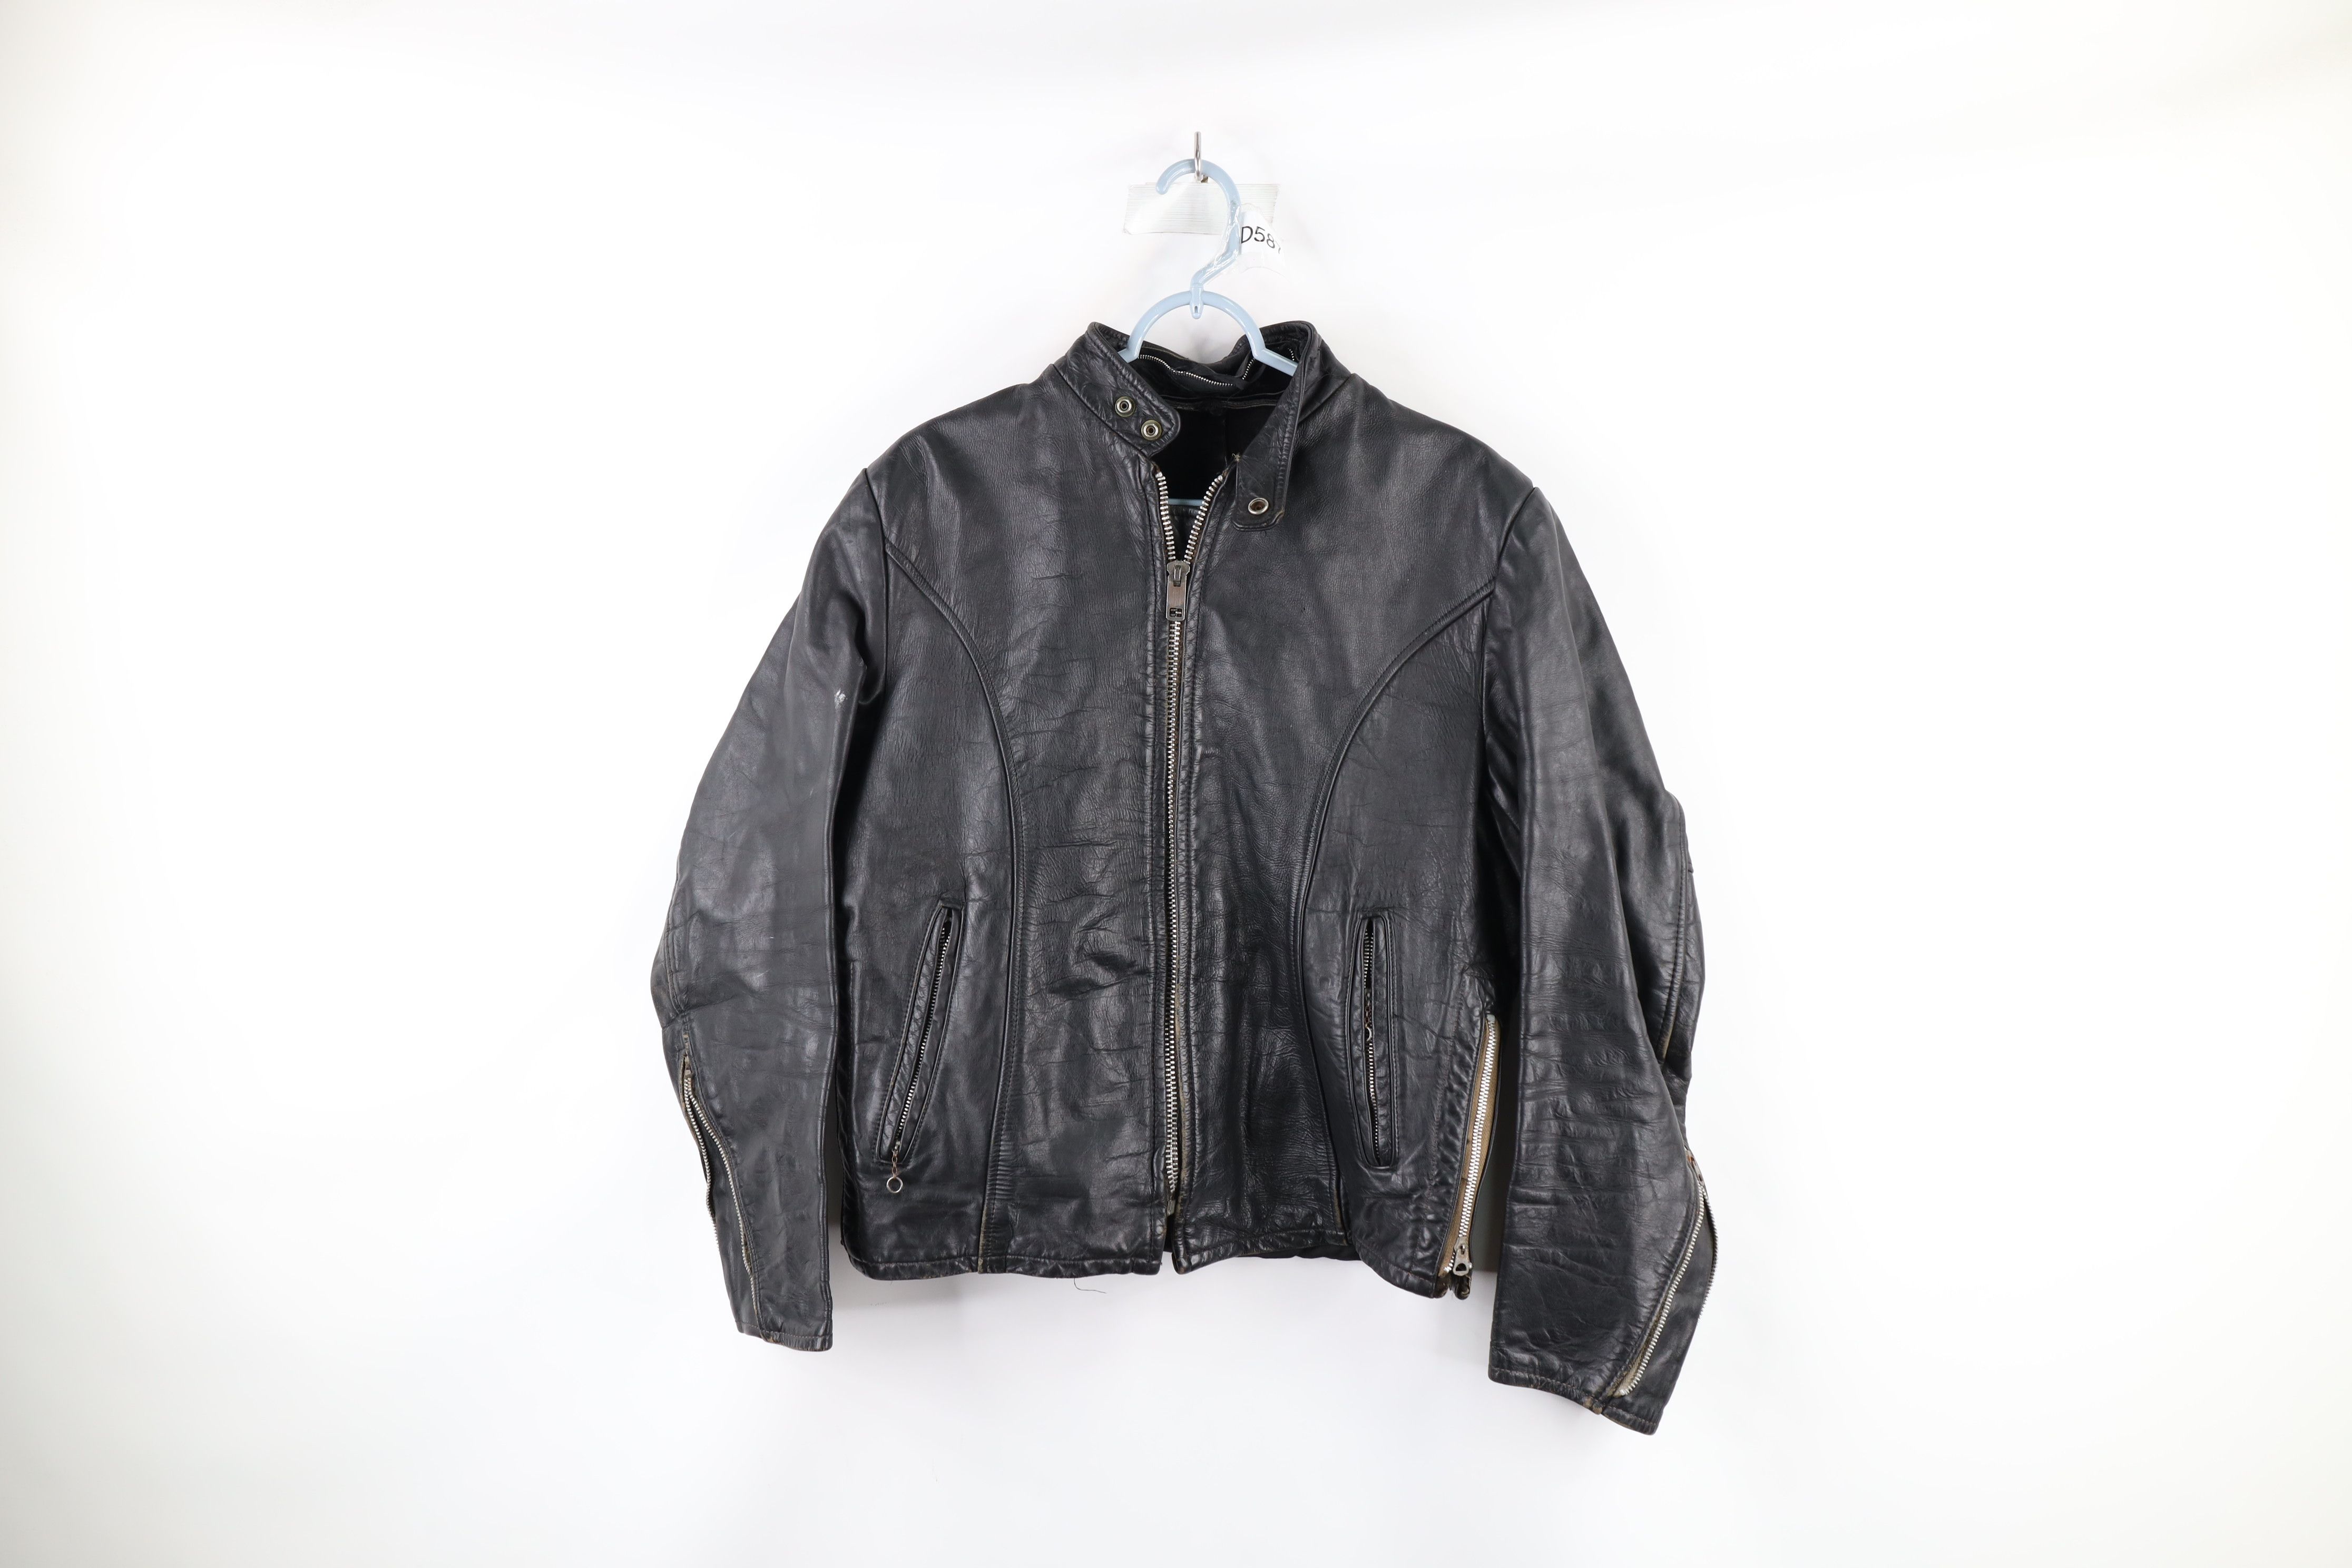 Vintage Vintage 70s Leather Cafe Racer Motorcycle Jacket Black USA Size US L / EU 52-54 / 3 - 1 Preview